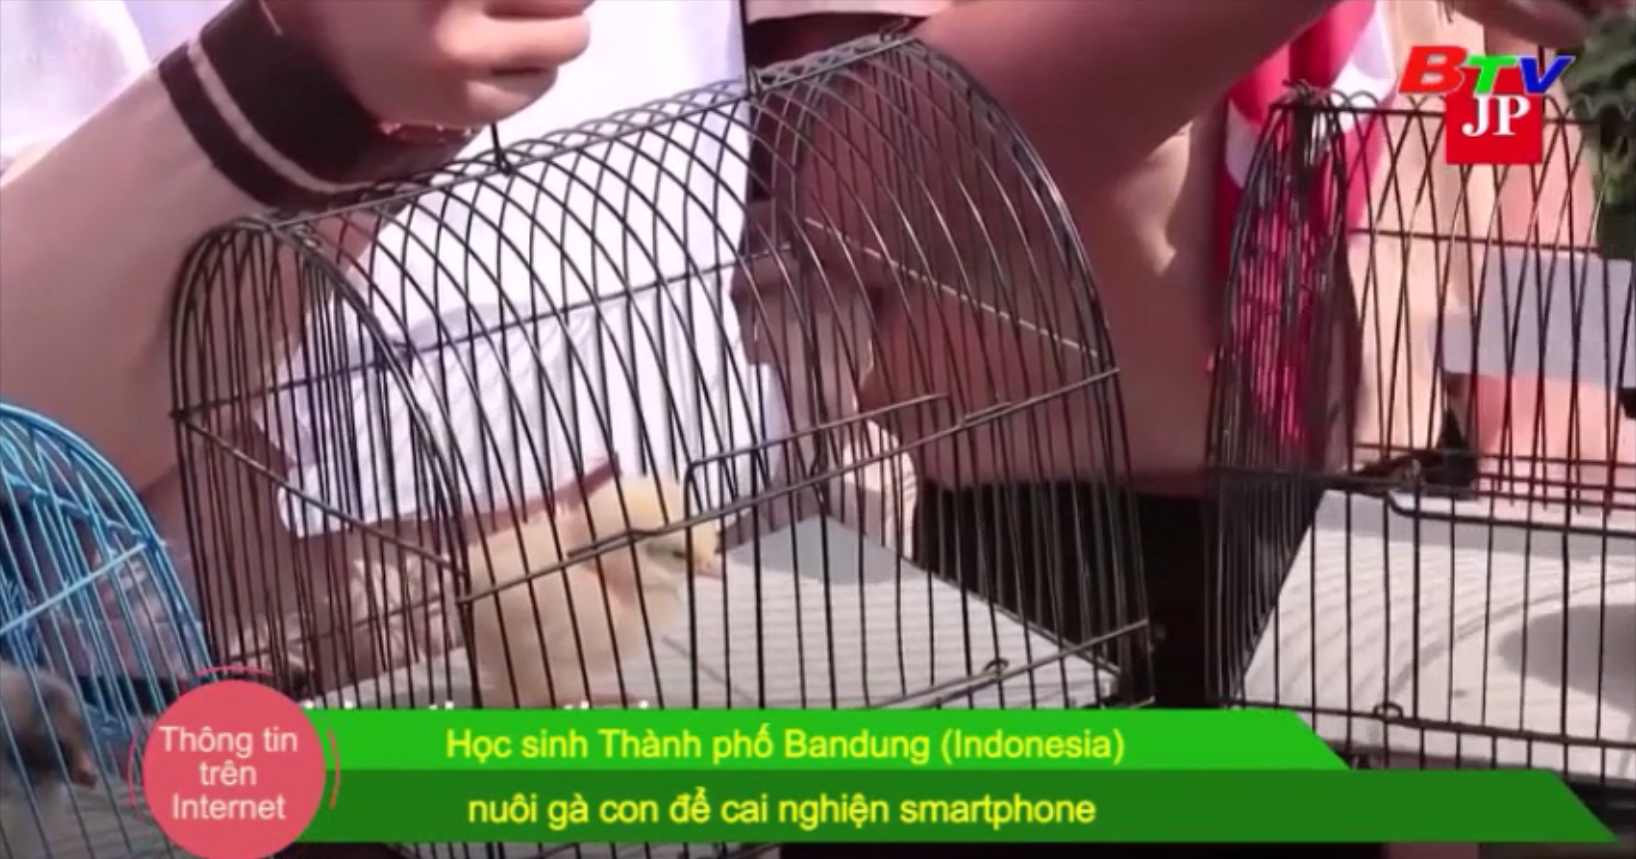 Học sinh thành phố Bandung (Indonesia) nuôi gà con để cai nghiện smartphone